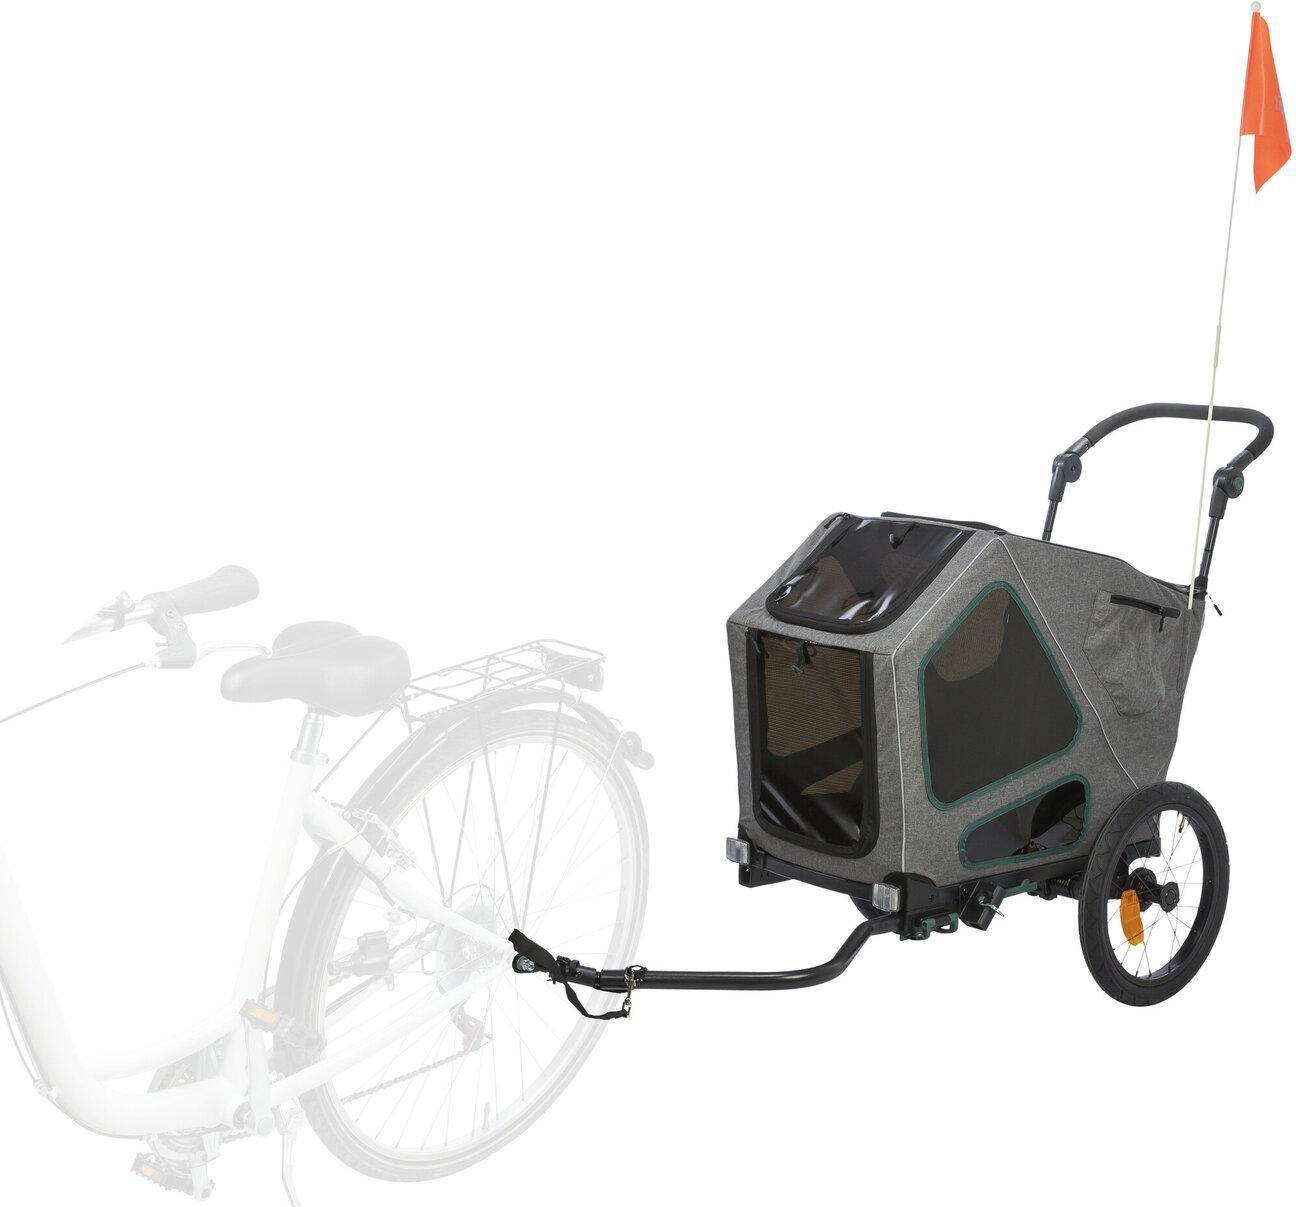 Cykelvagn hund Trixie Fahrrad-Anhänger Grau/Salbei S